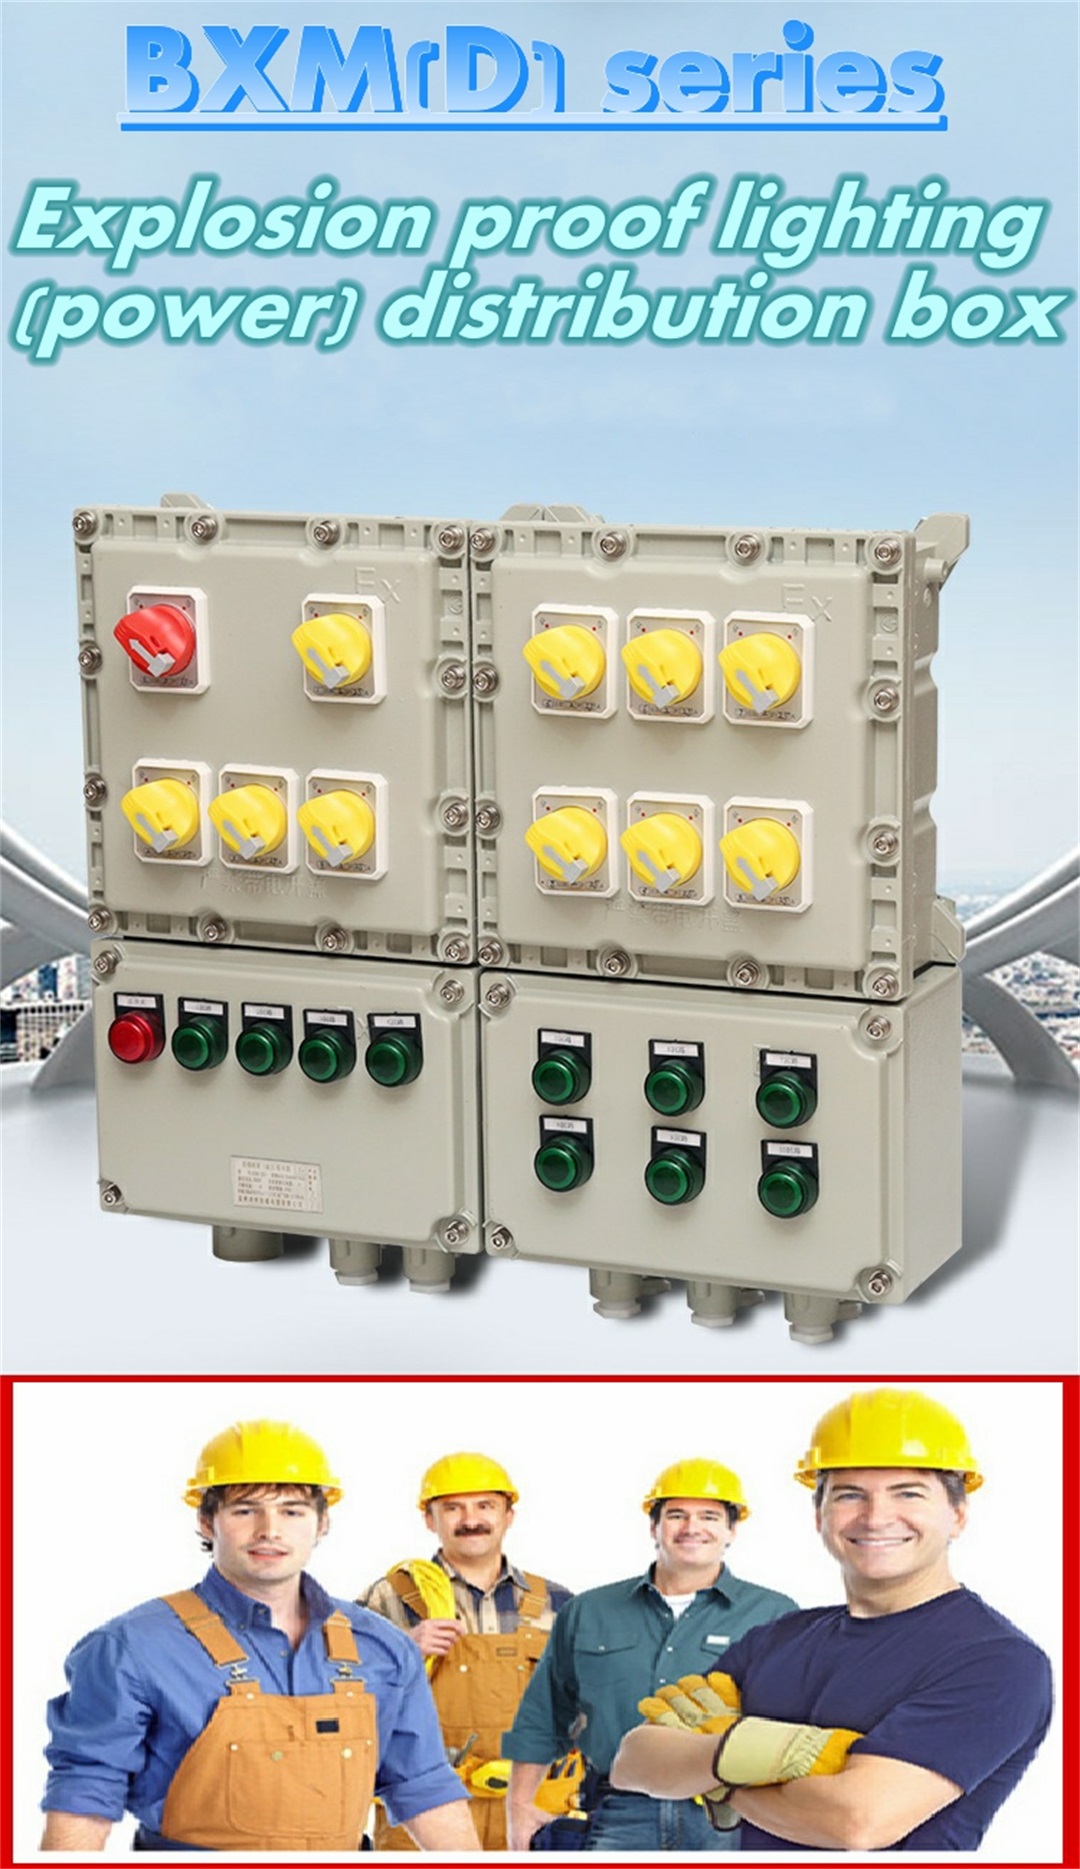 Explosionsgeschützter Verteilerkasten für Beleuchtung (Strom).